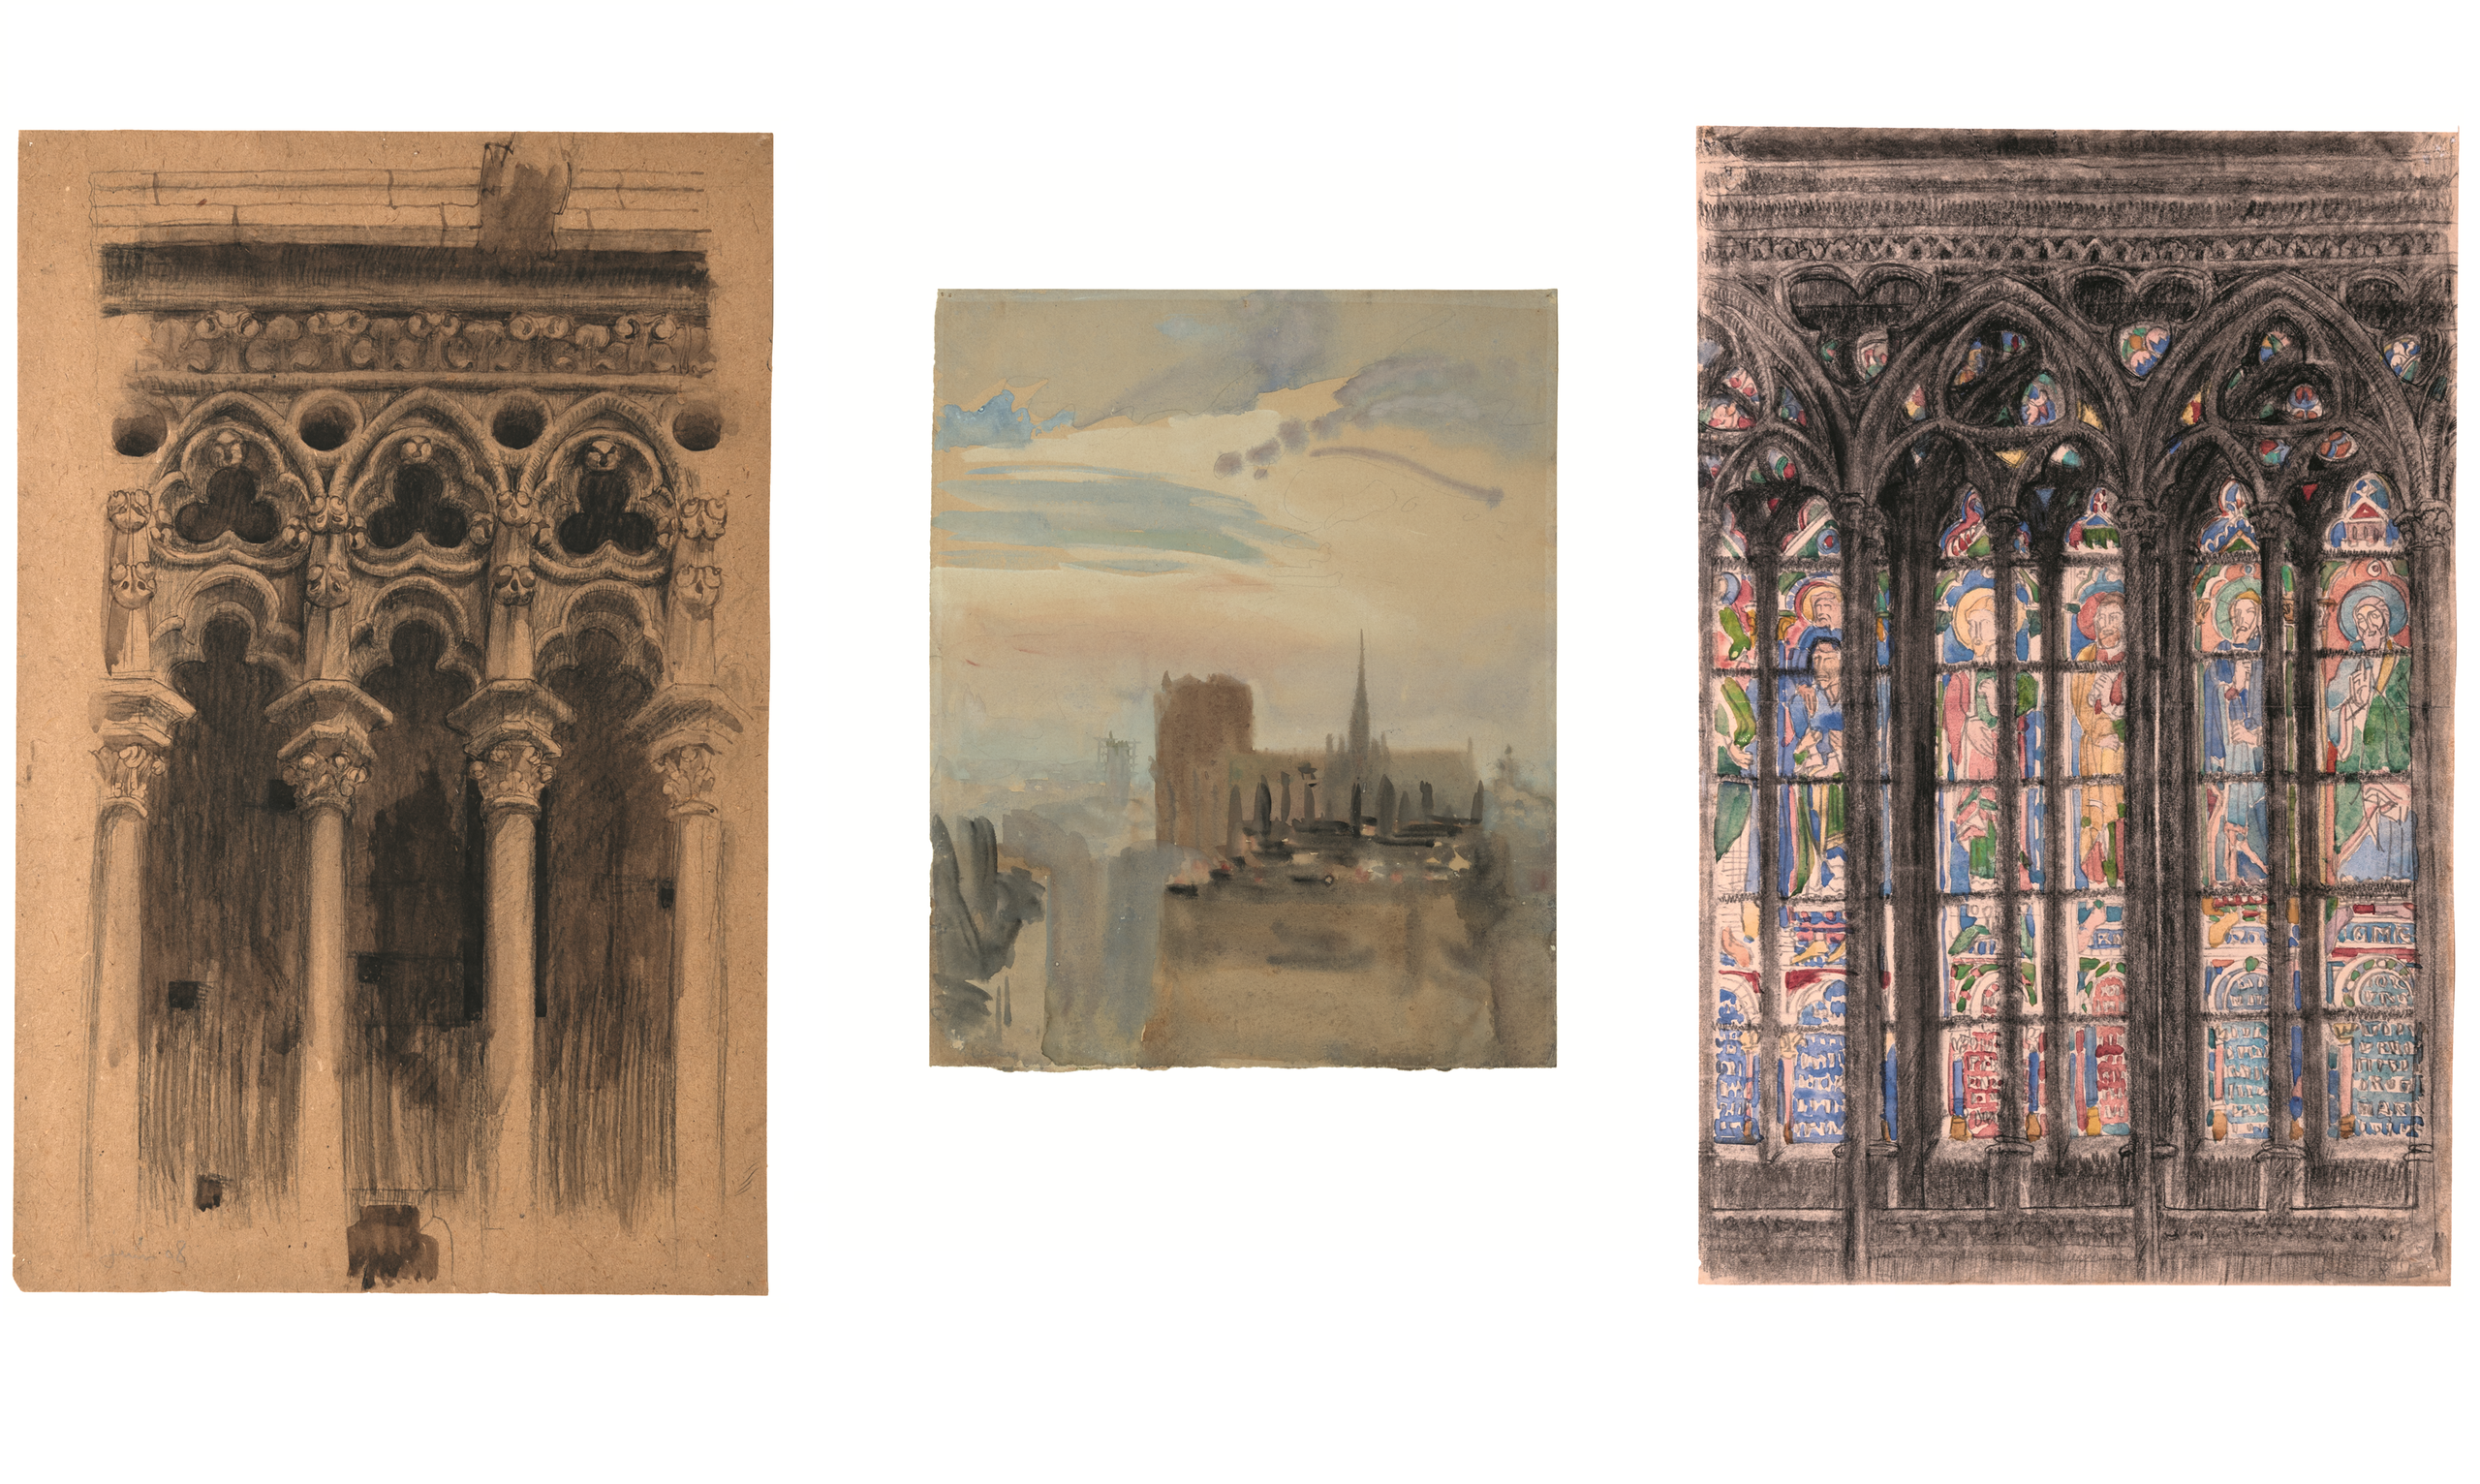 Tre disegni/dipinti della cattedrale di Notre Dame di Parigi.